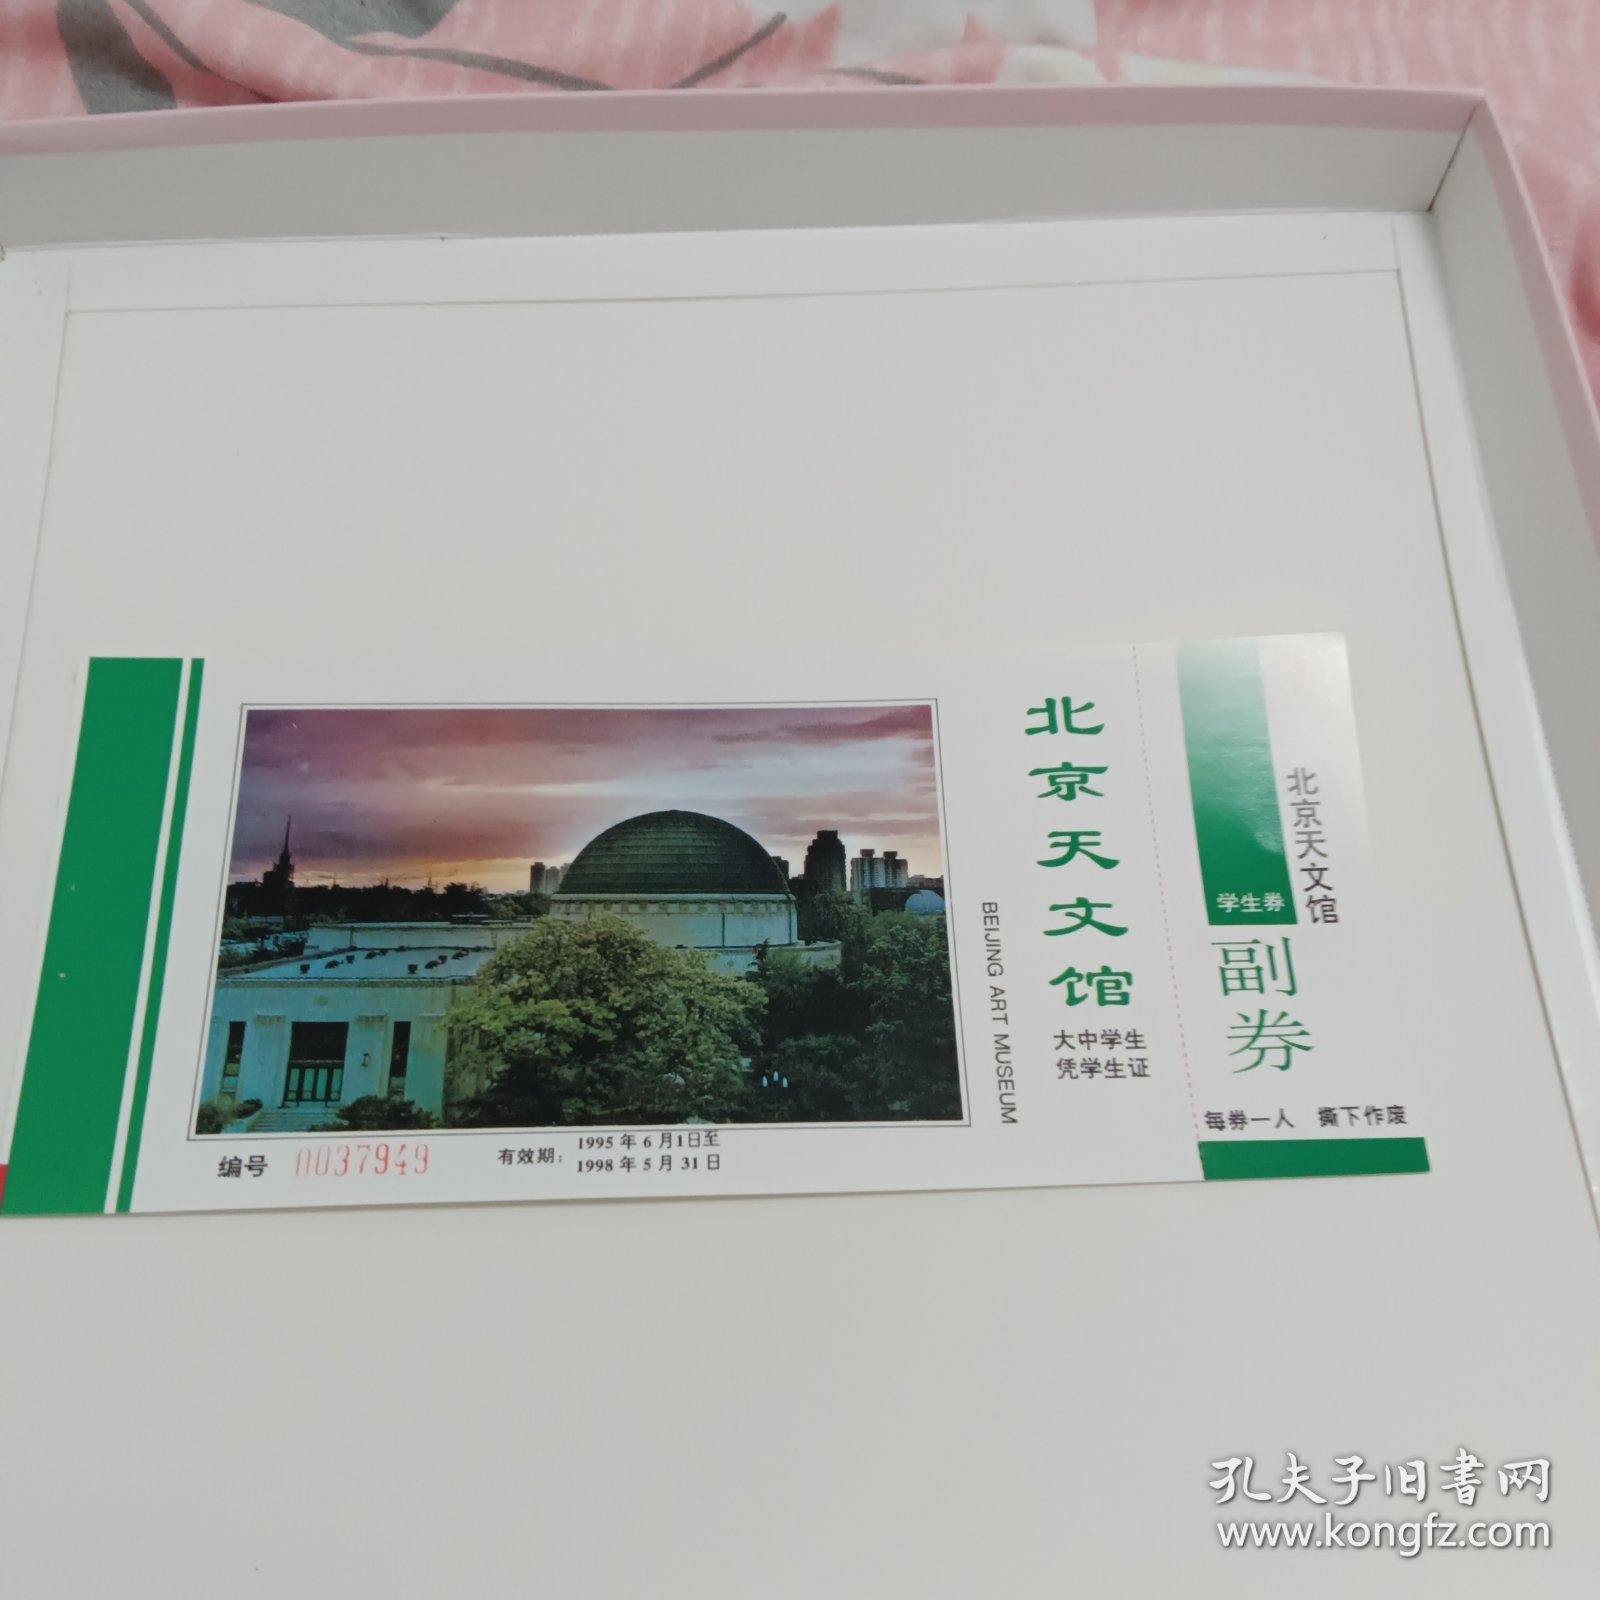 北京天文馆博物馆1995年学生券门票